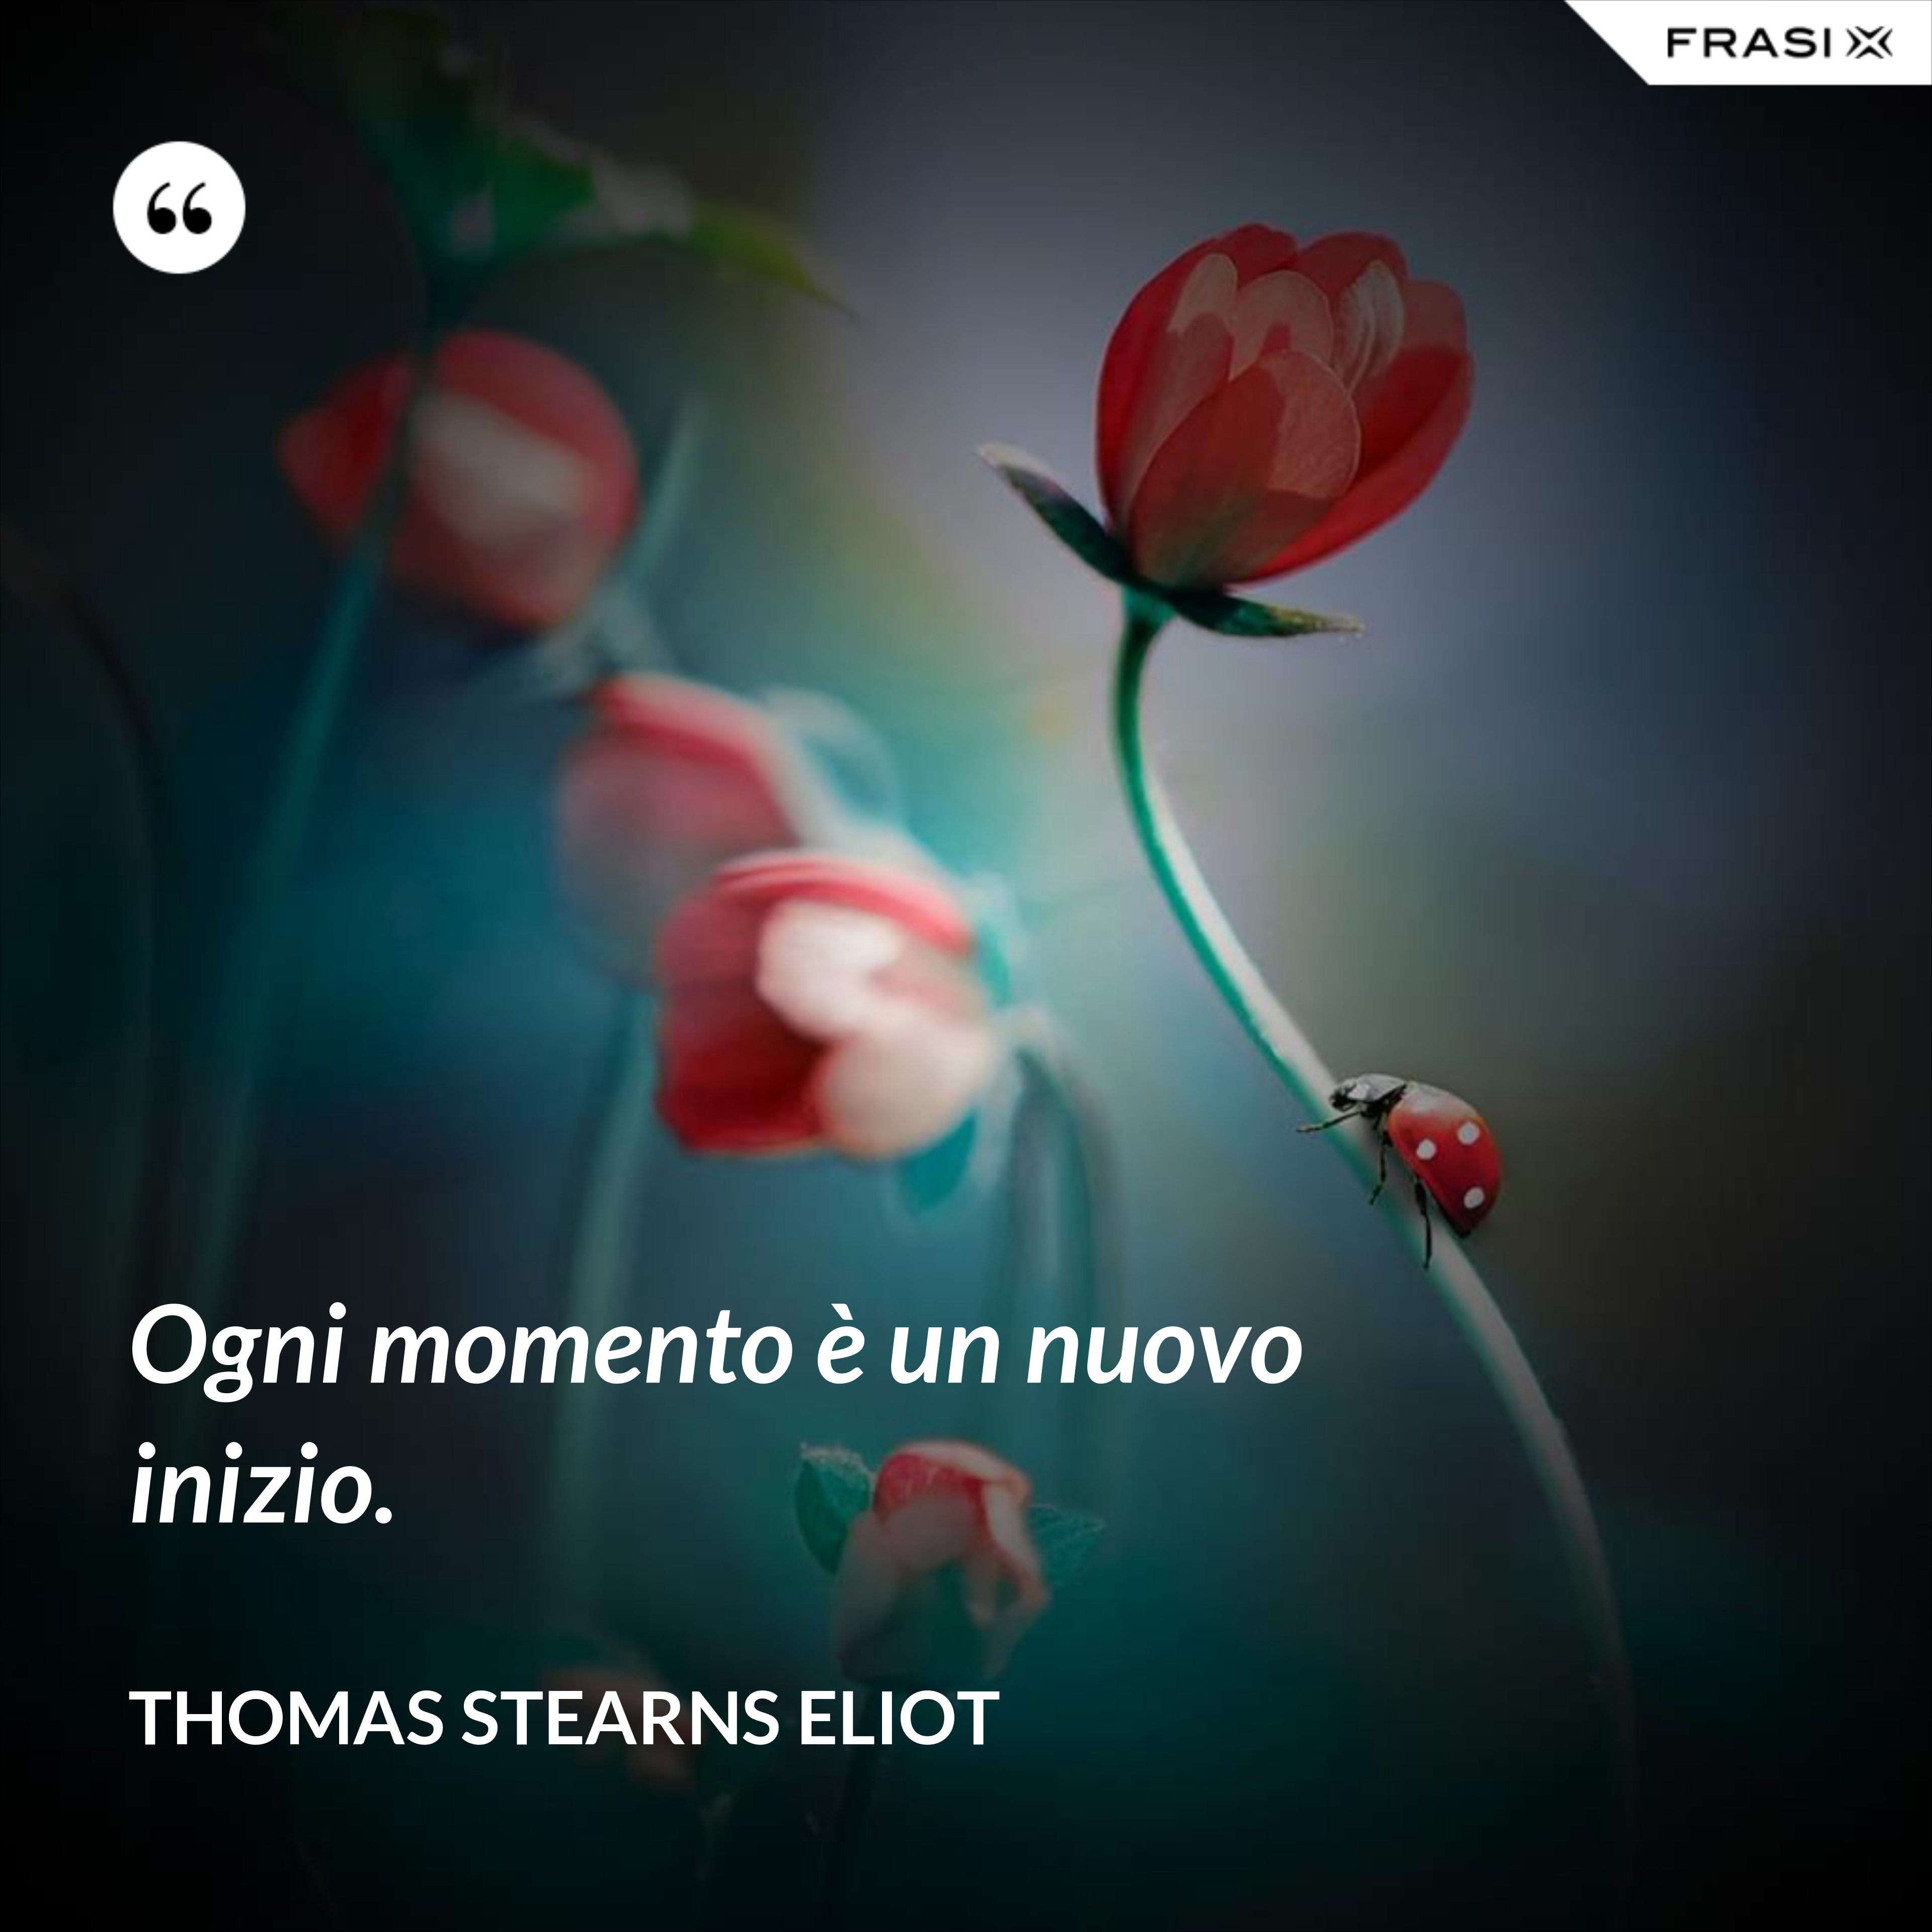 Ogni momento è un nuovo inizio. - Thomas Stearns Eliot